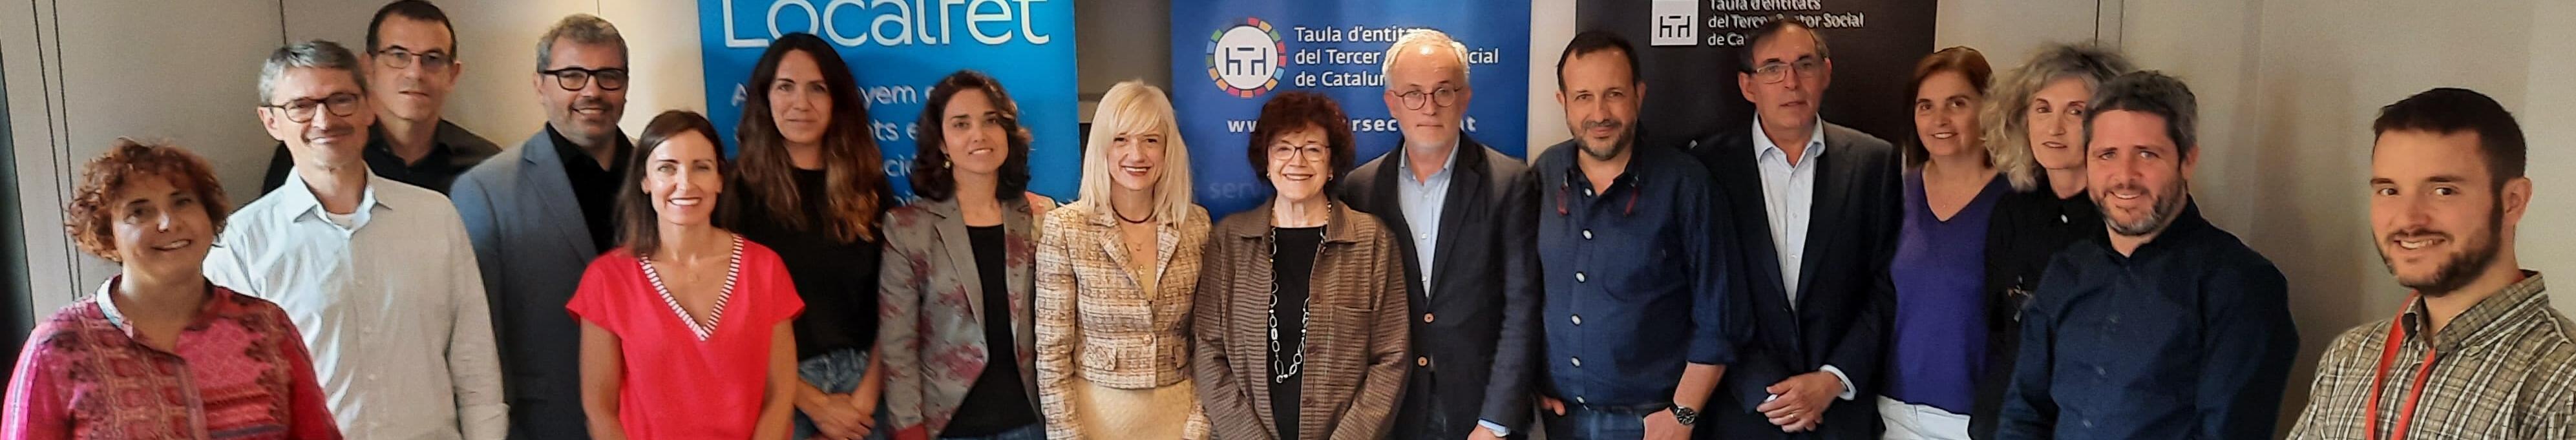 El Consorci Localret i la Taula del Tercer Sector Social de Catalunya s’alien per ajudar a combatre la bretxa digital i impulsar la innovació social